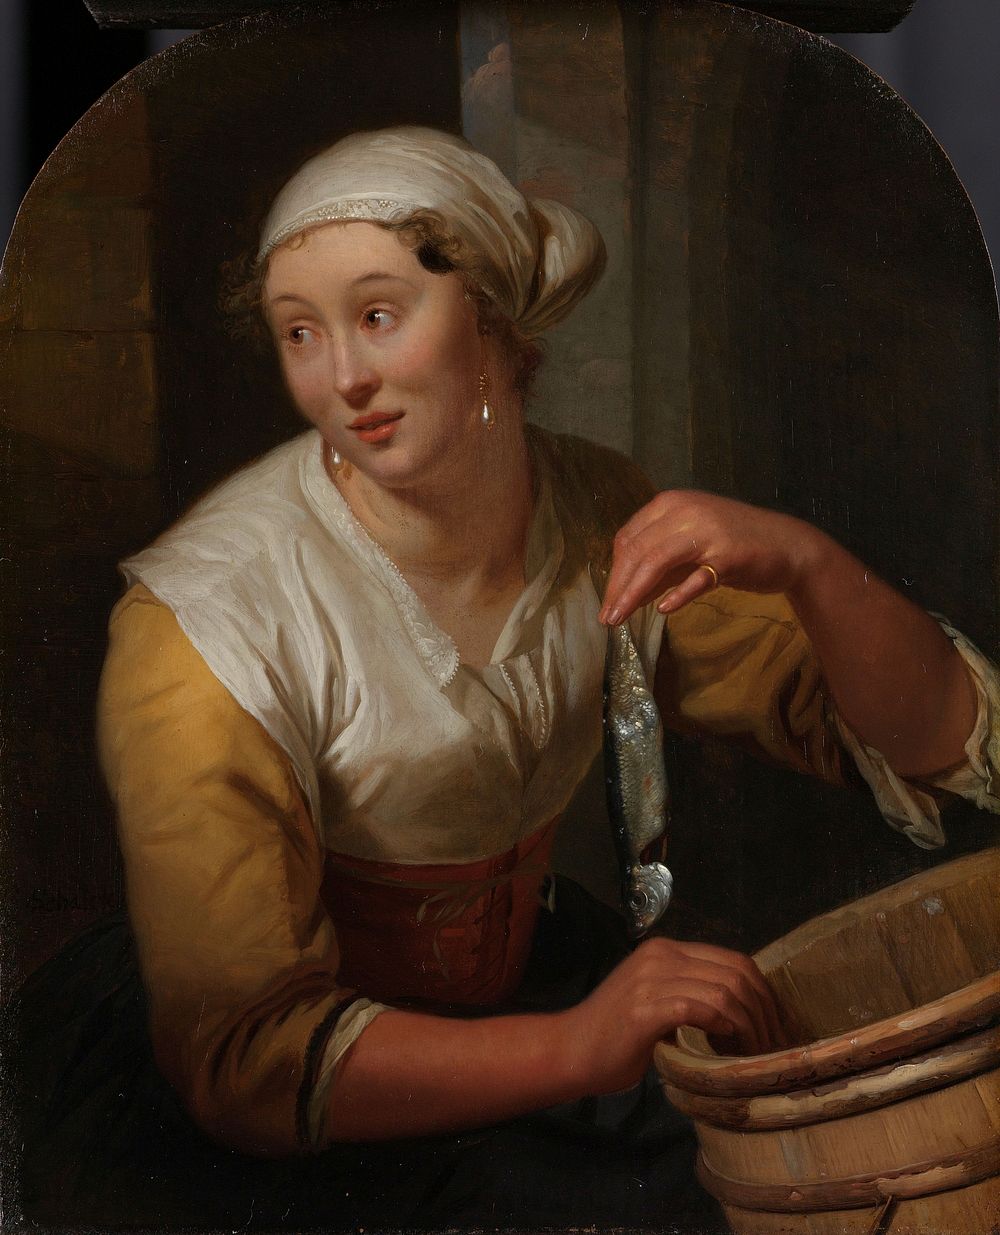 Woman Selling Herrings (1675 - 1680) by Godfried Schalcken